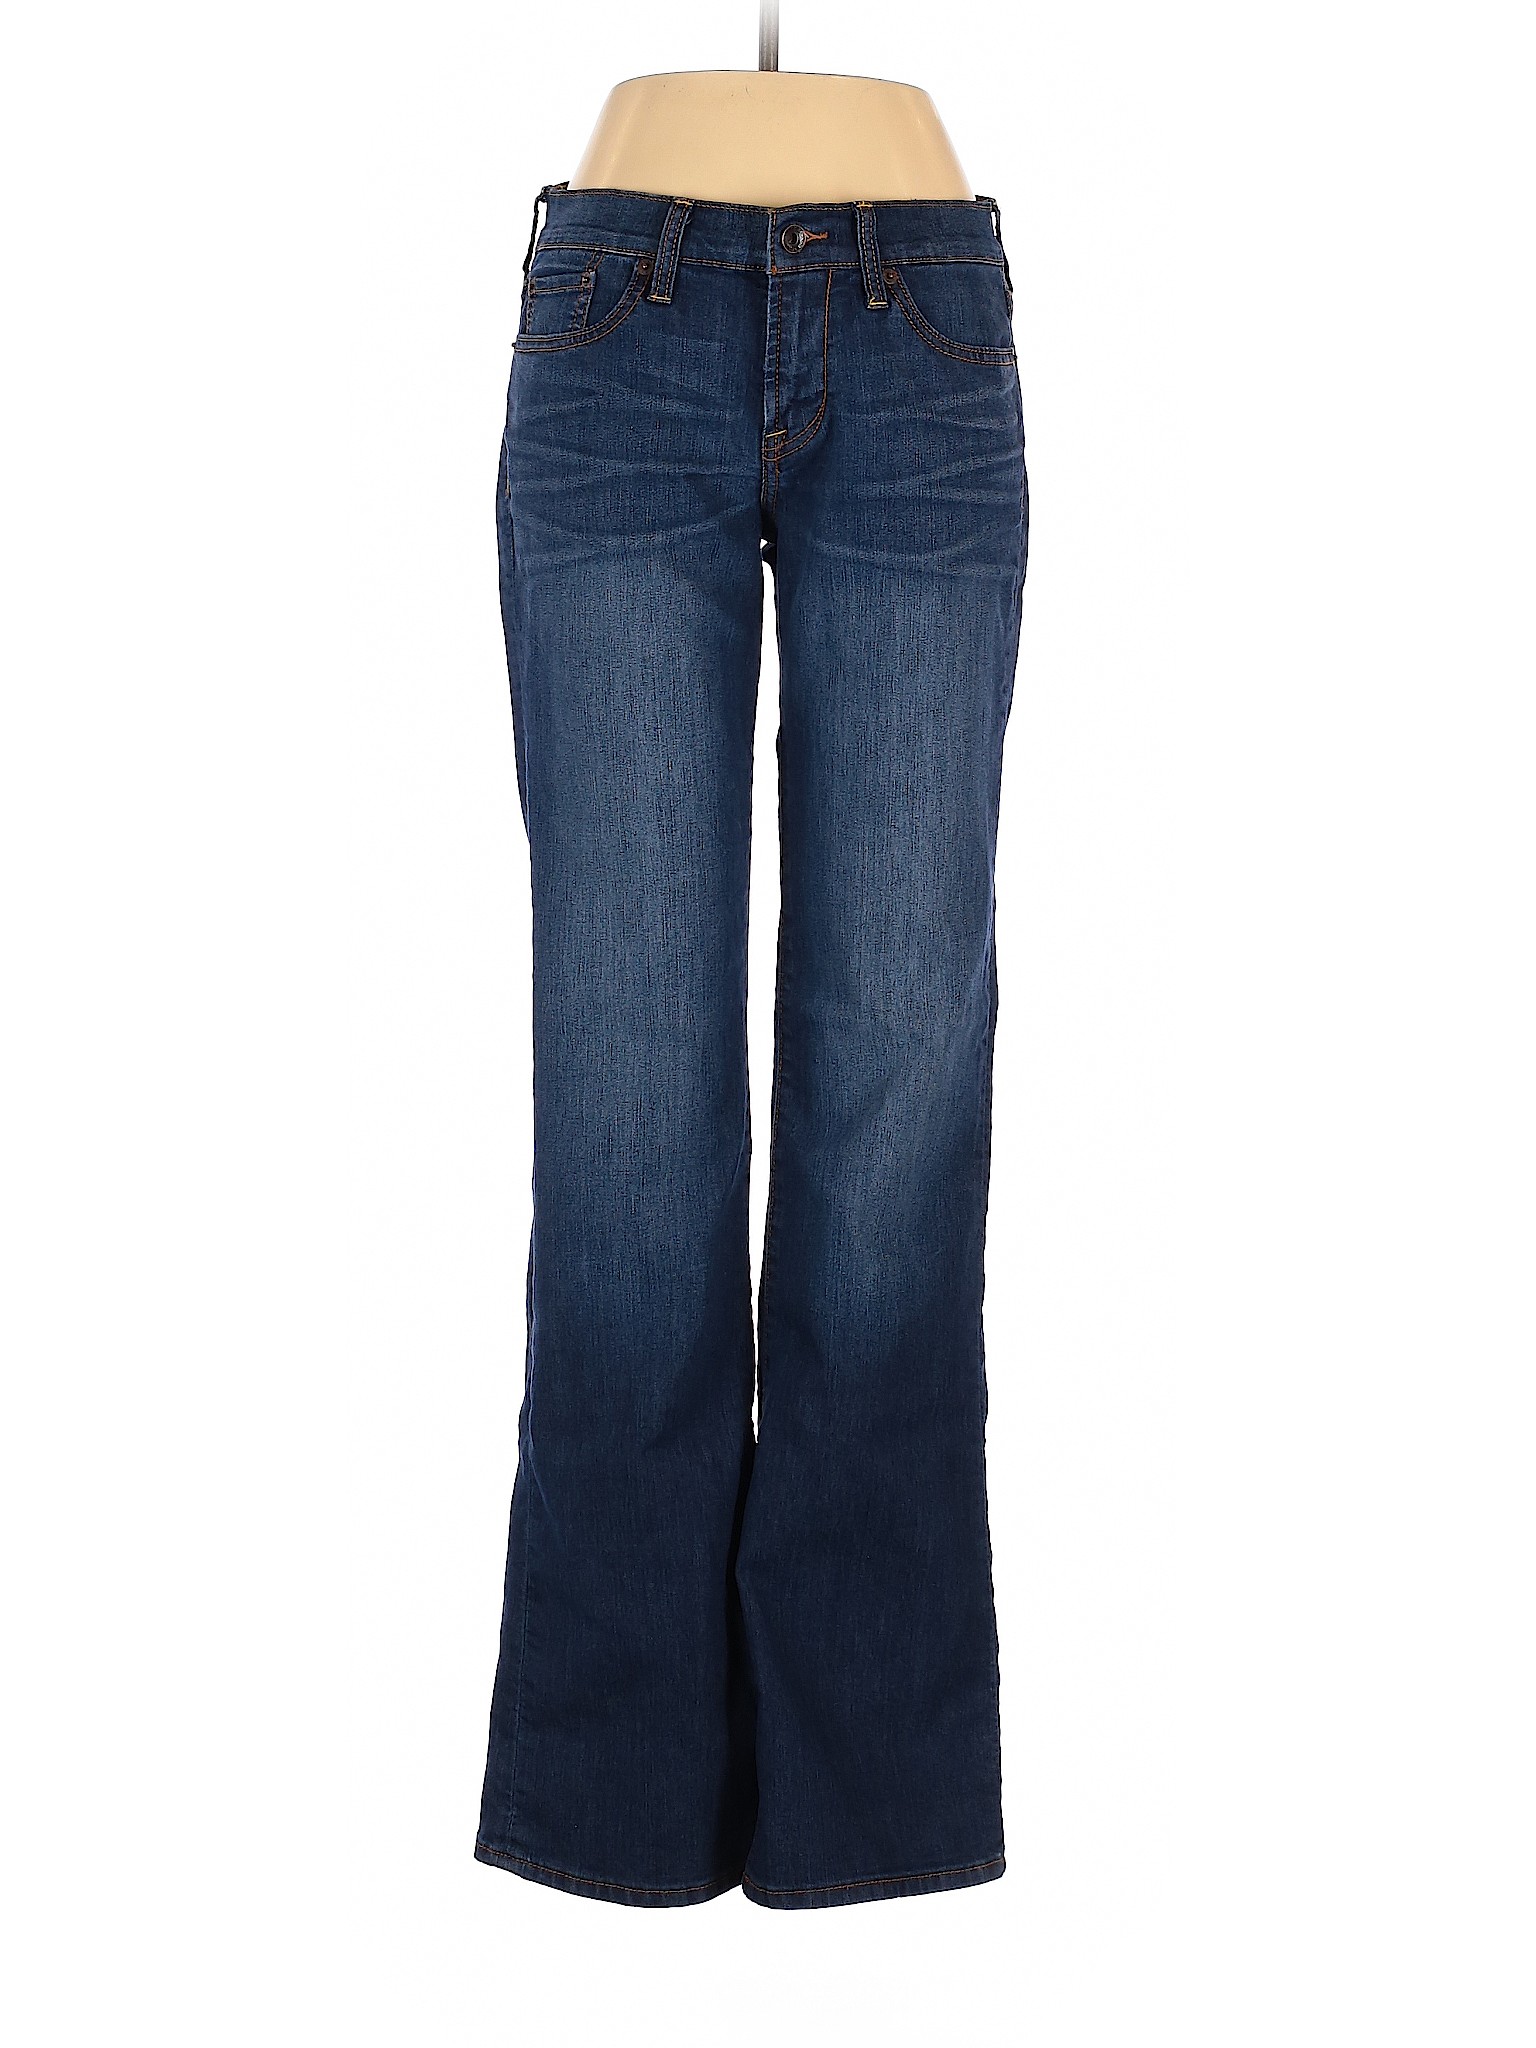 Lucky Brand Women Blue Jeans 27W | eBay